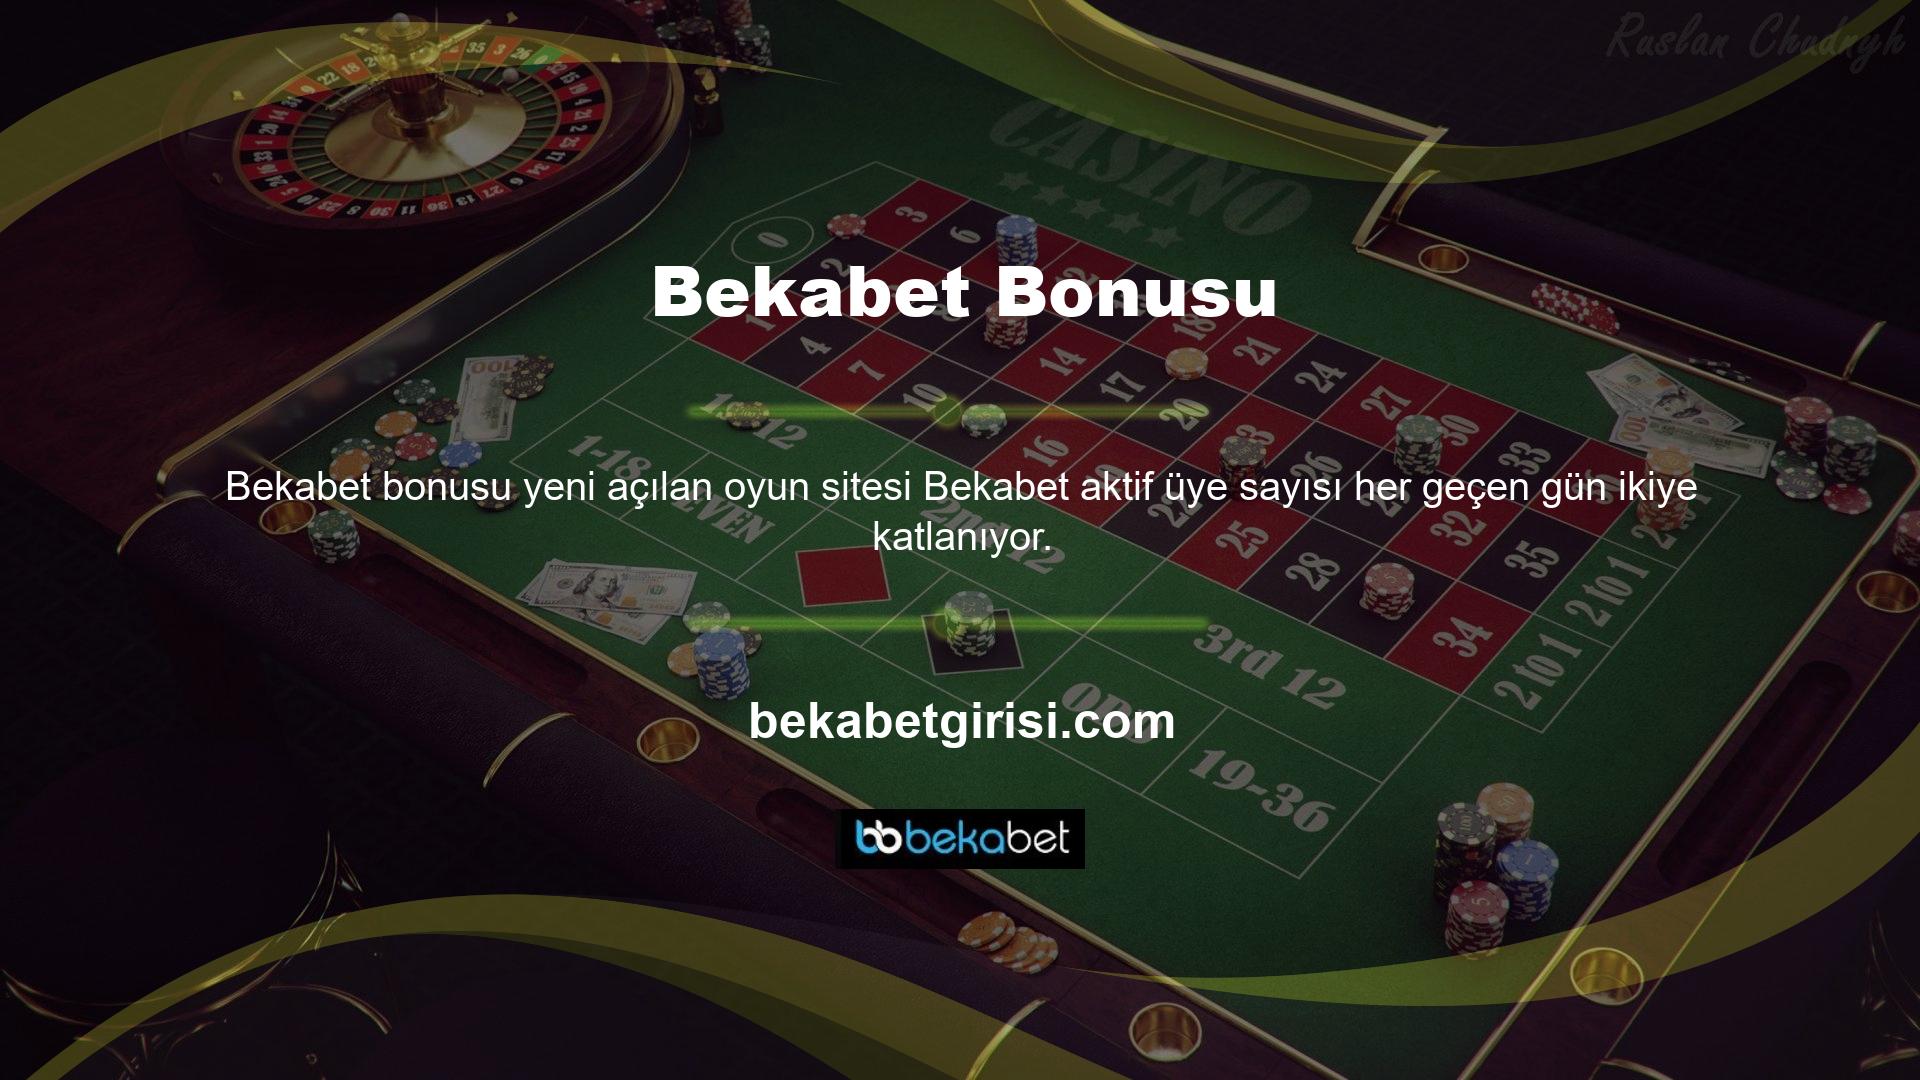 Bekabet web sitesi canlı casino, canlı casino, spor bahisleri, sanal casino ve E-spor dahil olmak üzere çeşitli oyun kategorileri sunmaktadır